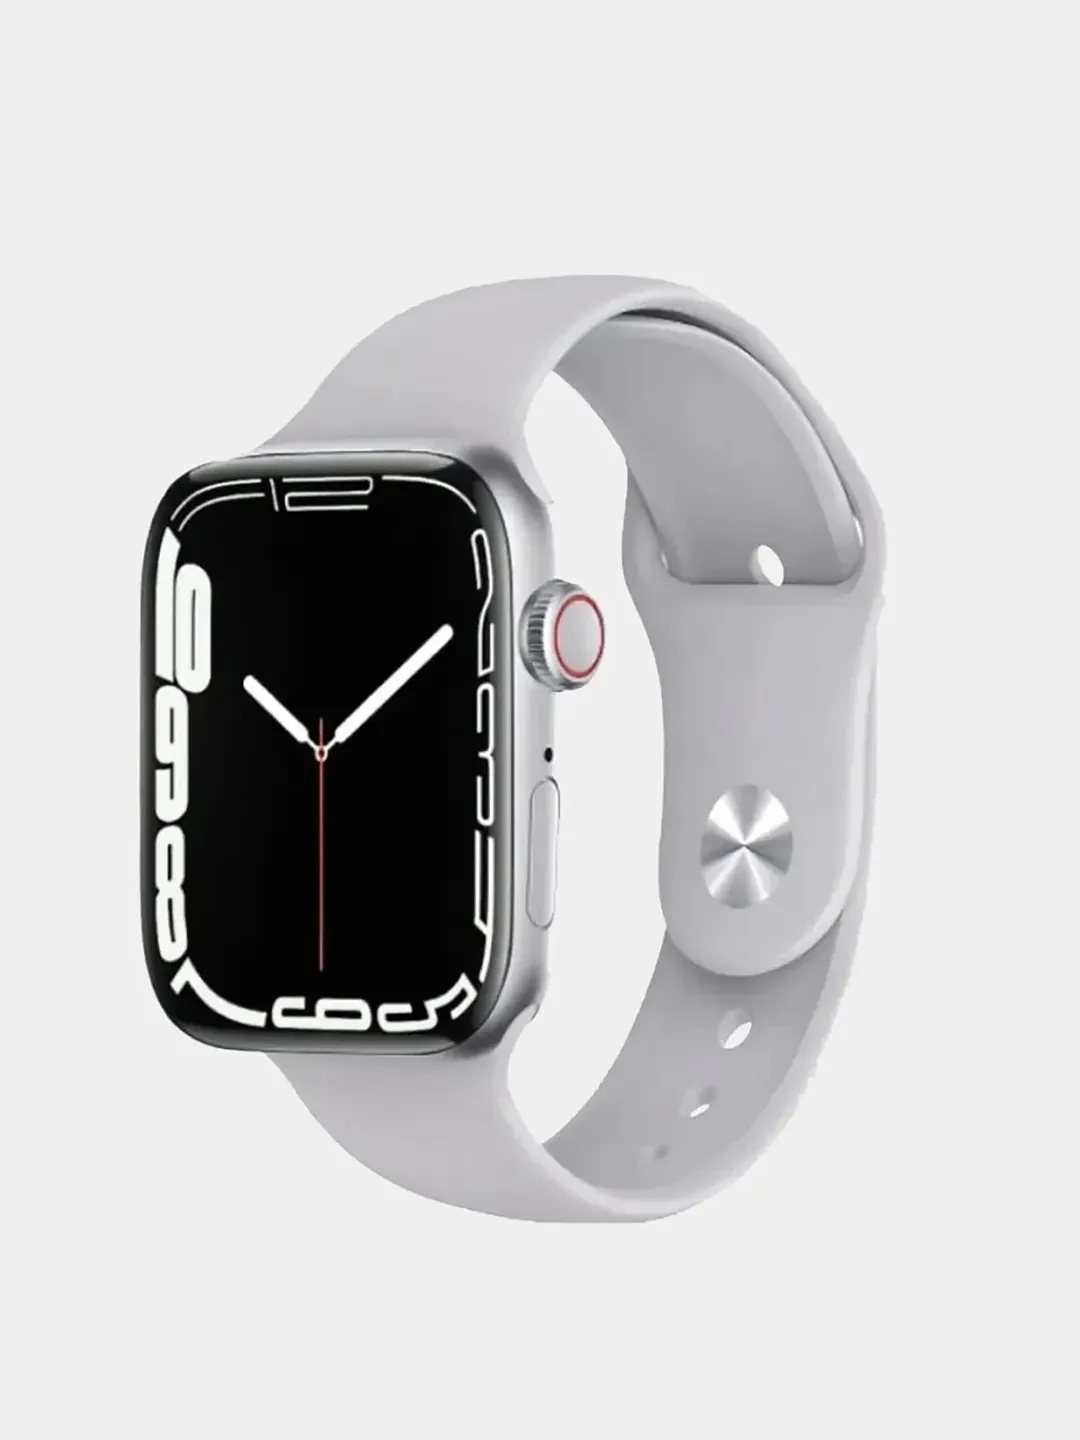 Смарт часы hw22. M16 Mini смарт часы. Apple watch se 40mm. Hw22 Smart watch 6. Часы a8 pro